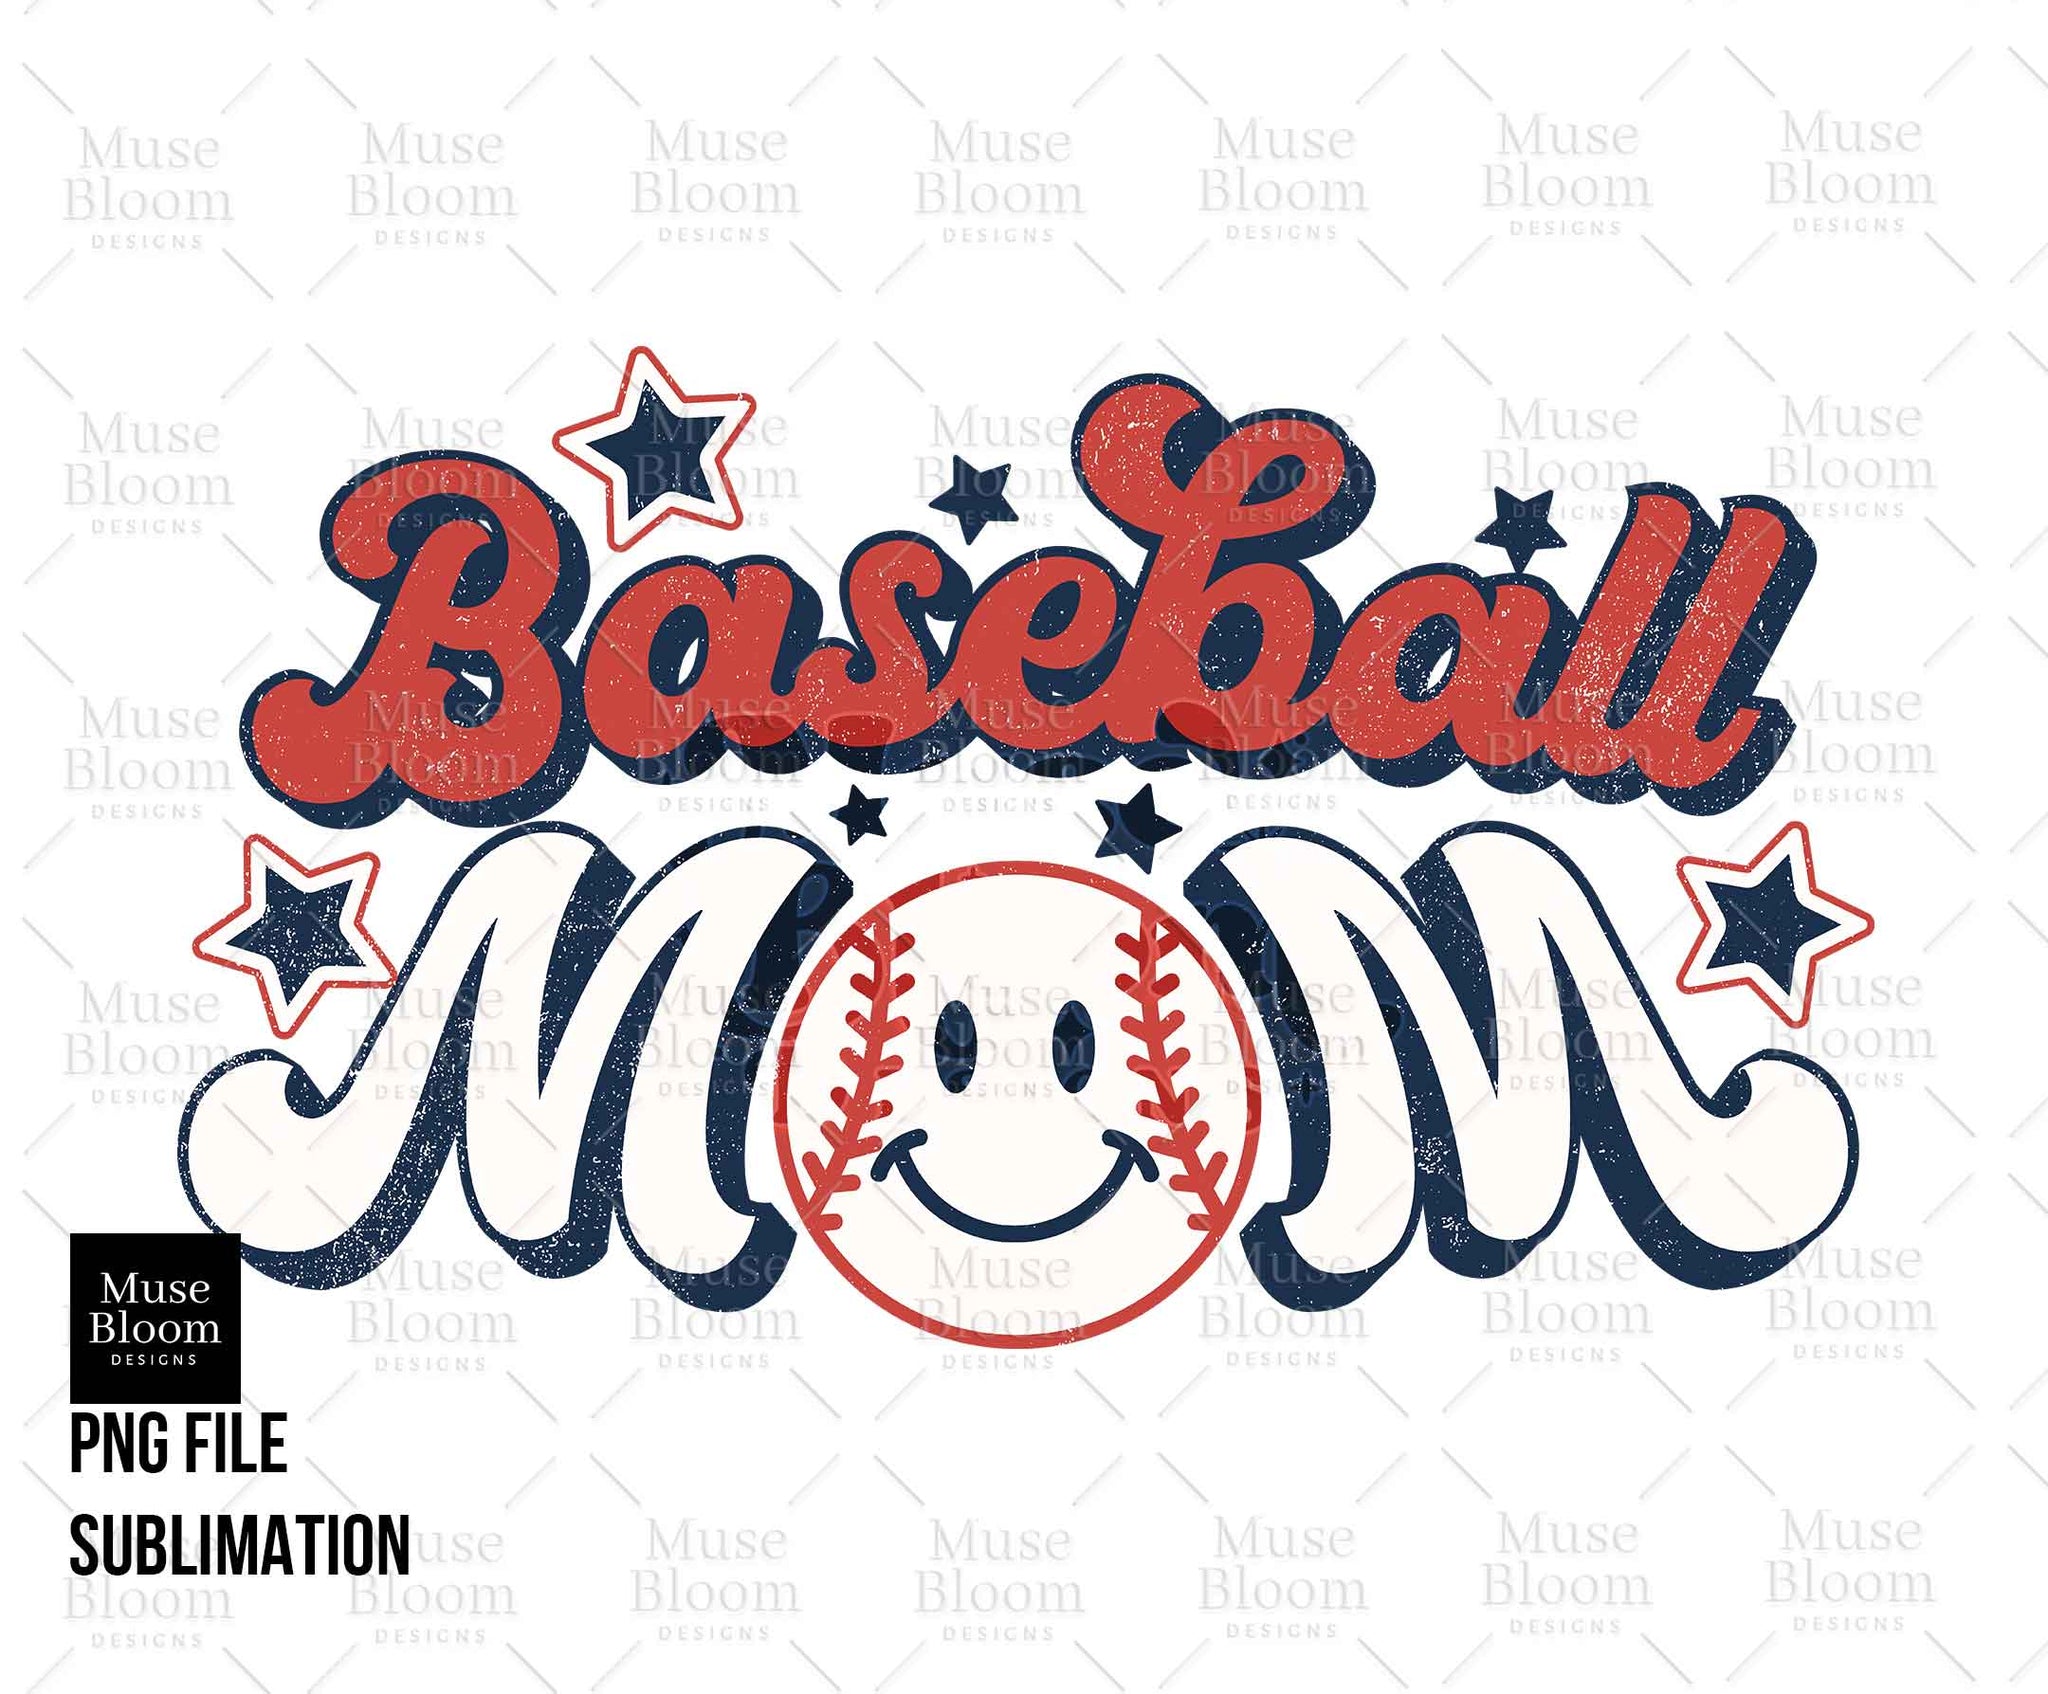 Baseball Mom PNG Retro Shirt Design for Sublimation